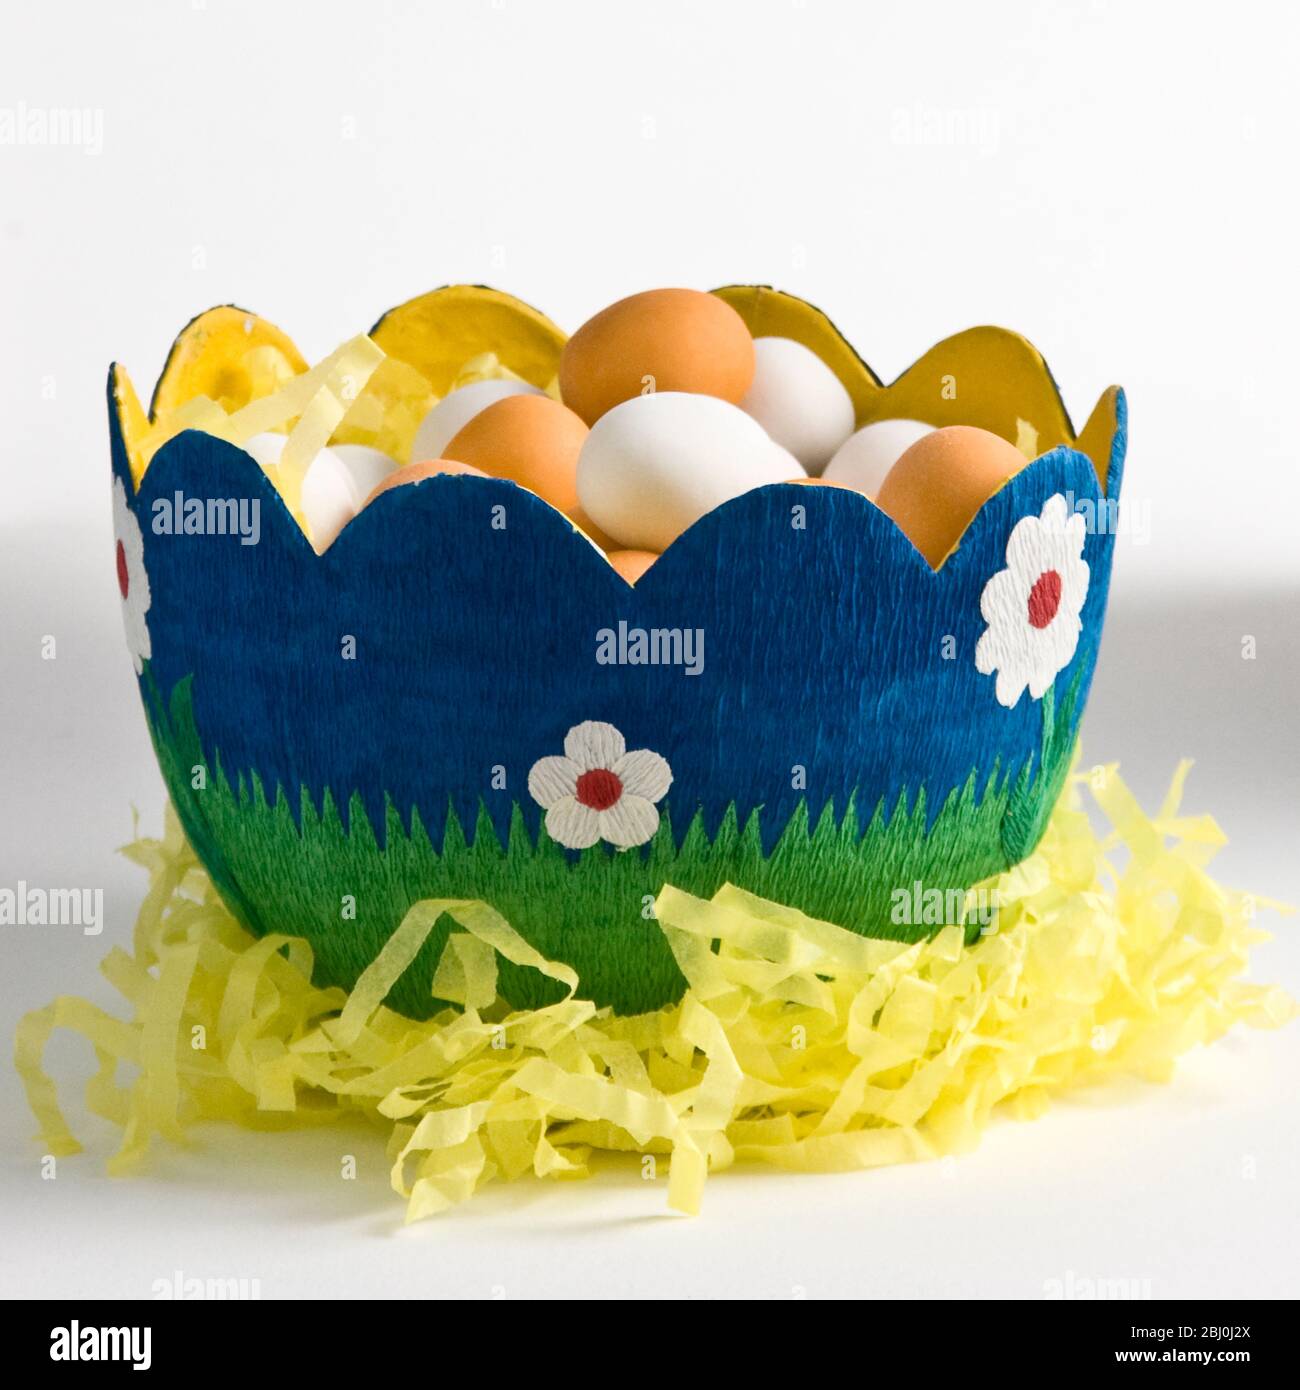 Ciotola di carta decorata a forma di uovo con uova di cioccolato rivestite di zucchero - Foto Stock